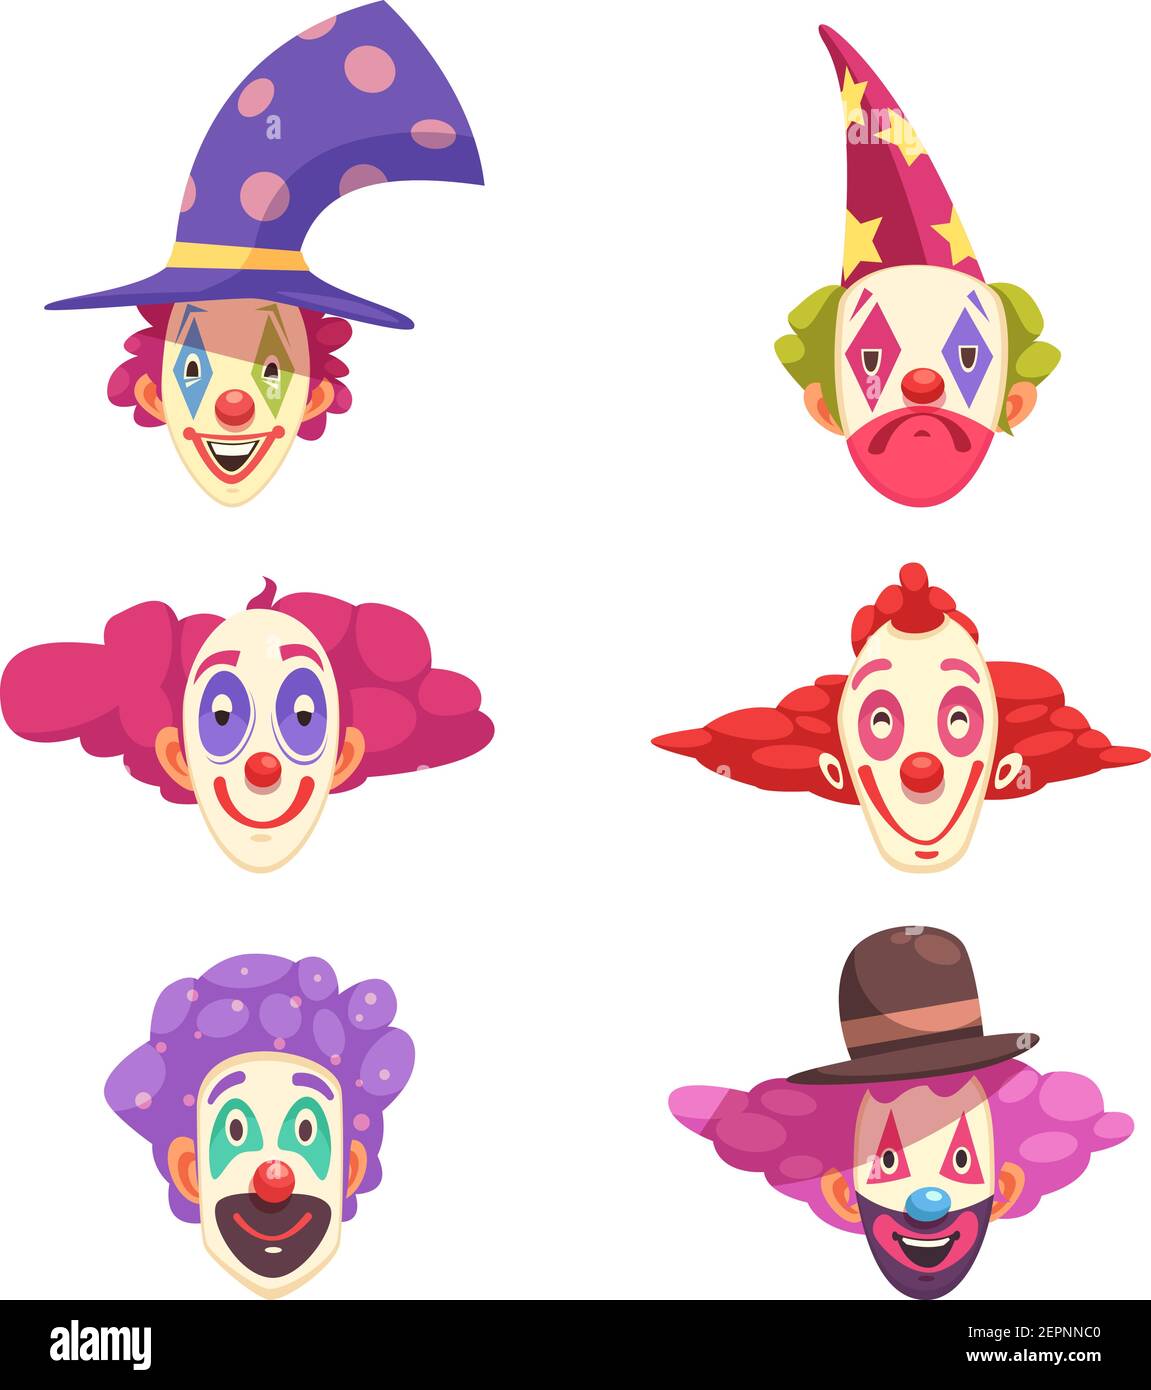 Masken von Clowns mit verschiedenen Grimassen auf Gesichtern und gesetzt Bunte lockiges Haar isoliert Vektor-Illustration Stock Vektor